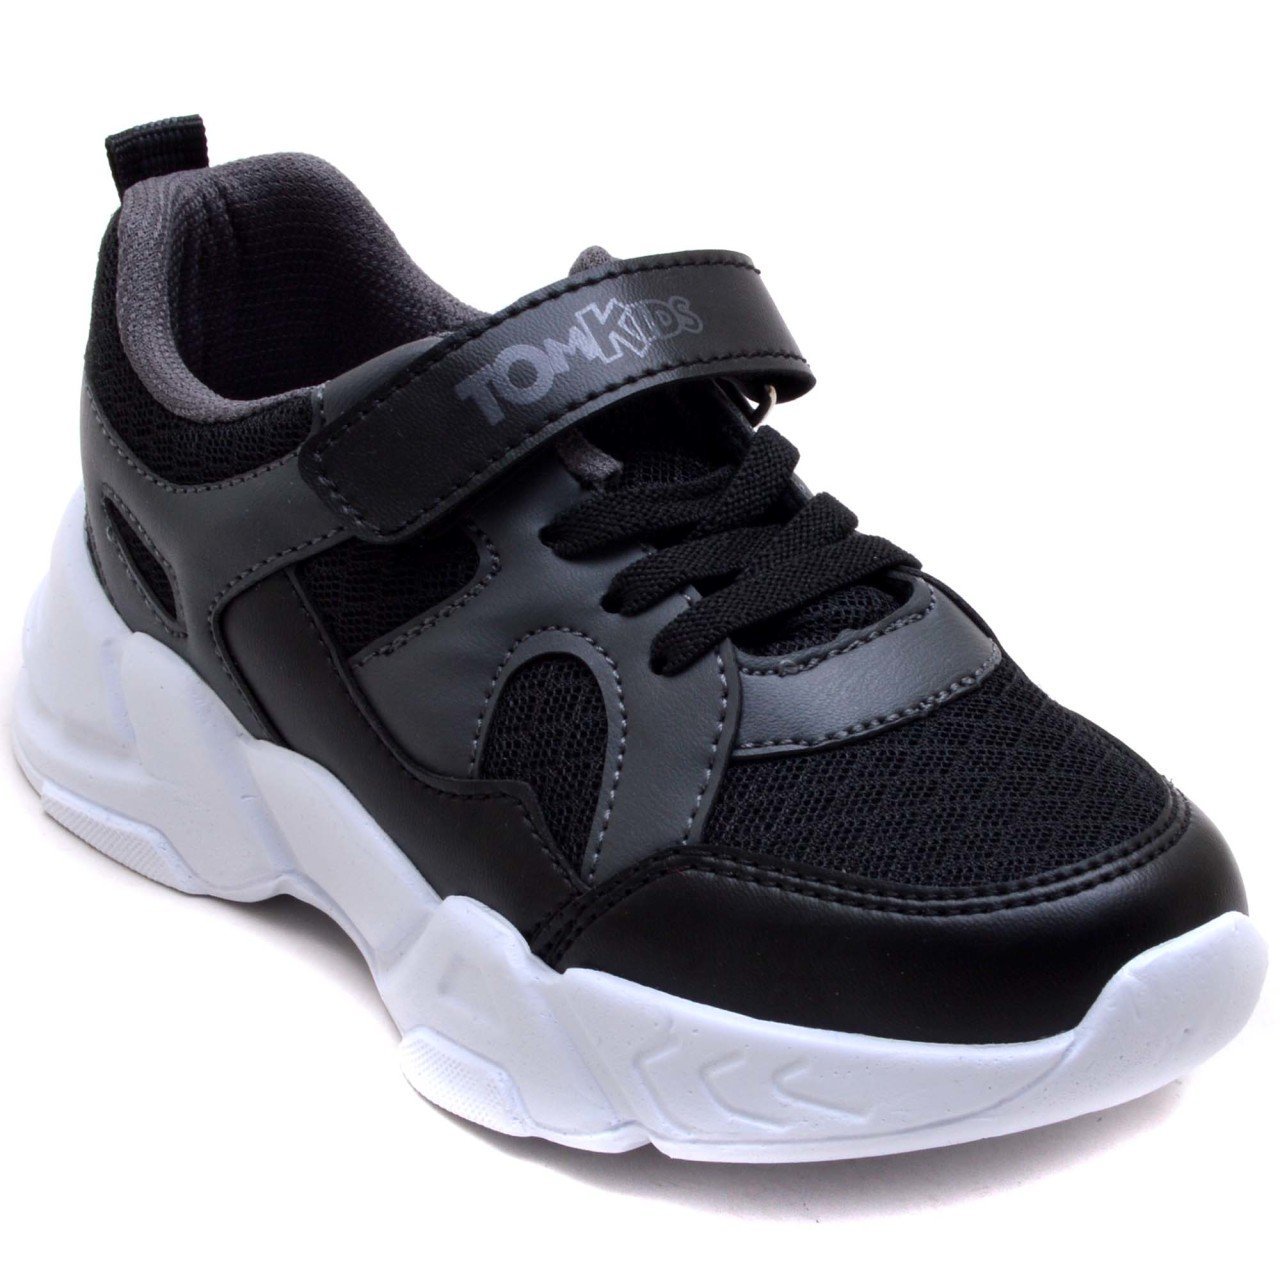 TOMKIDS-9 Filet Spor Ayakkabı - Siyah